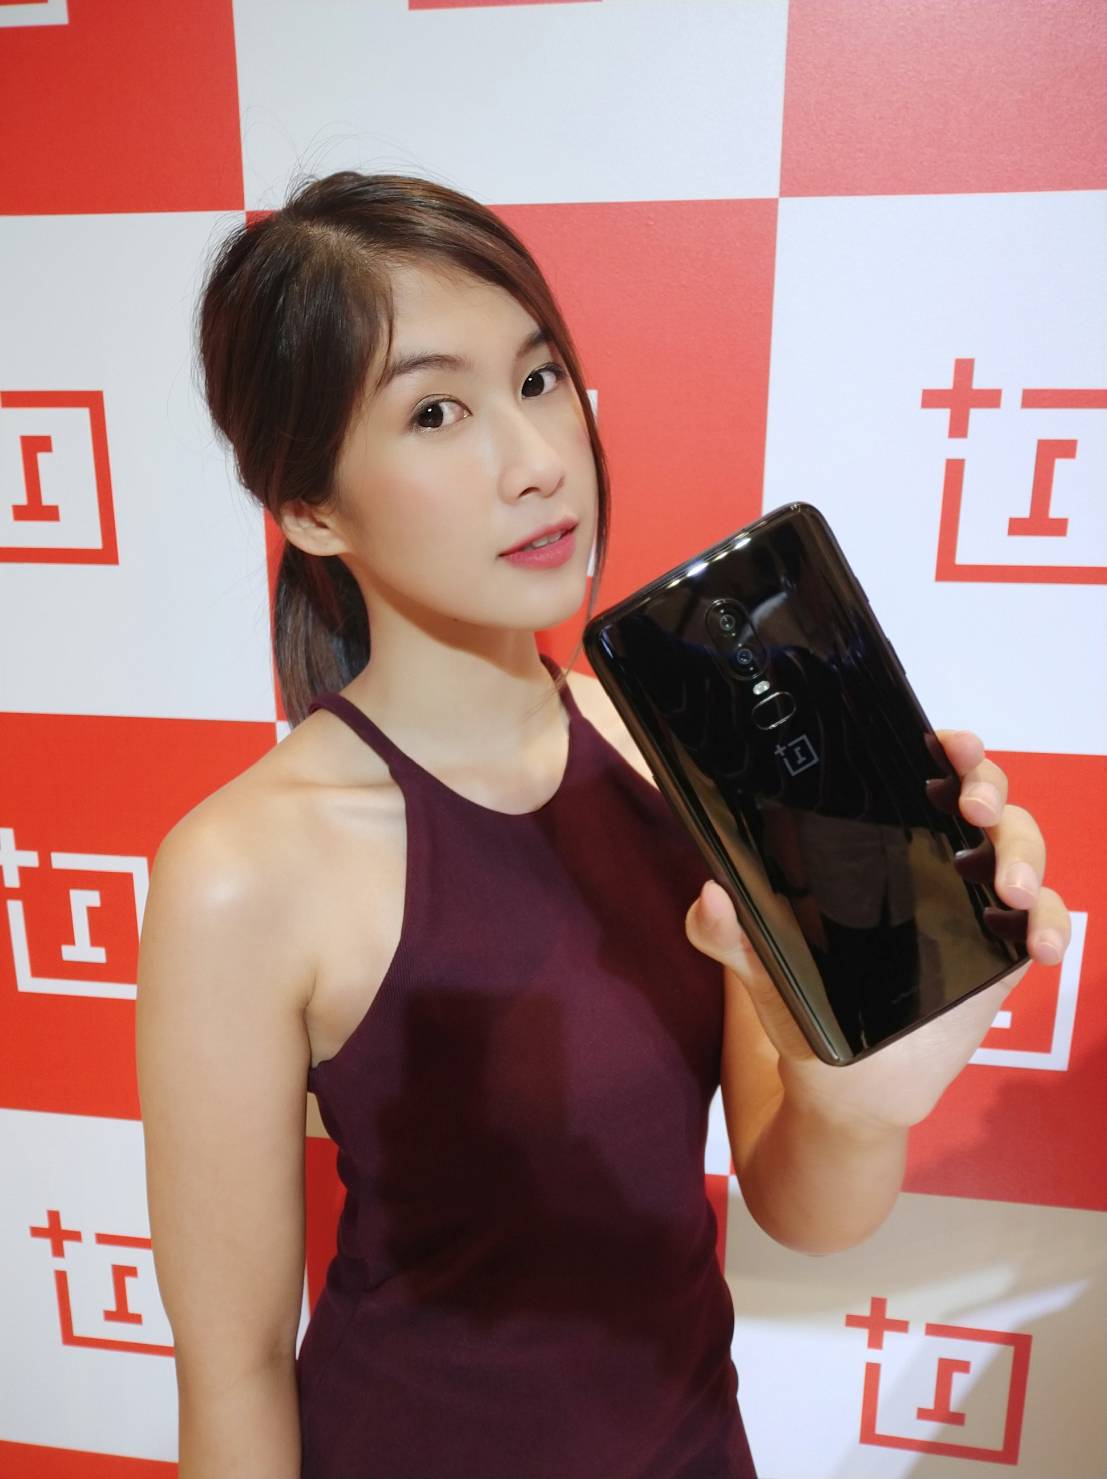 เปิดตัว OnePlus 6 ในไทยอย่างเป็นทางการ เตรียมวางจำหน่าย 28 มิถุนายนนี้ !!